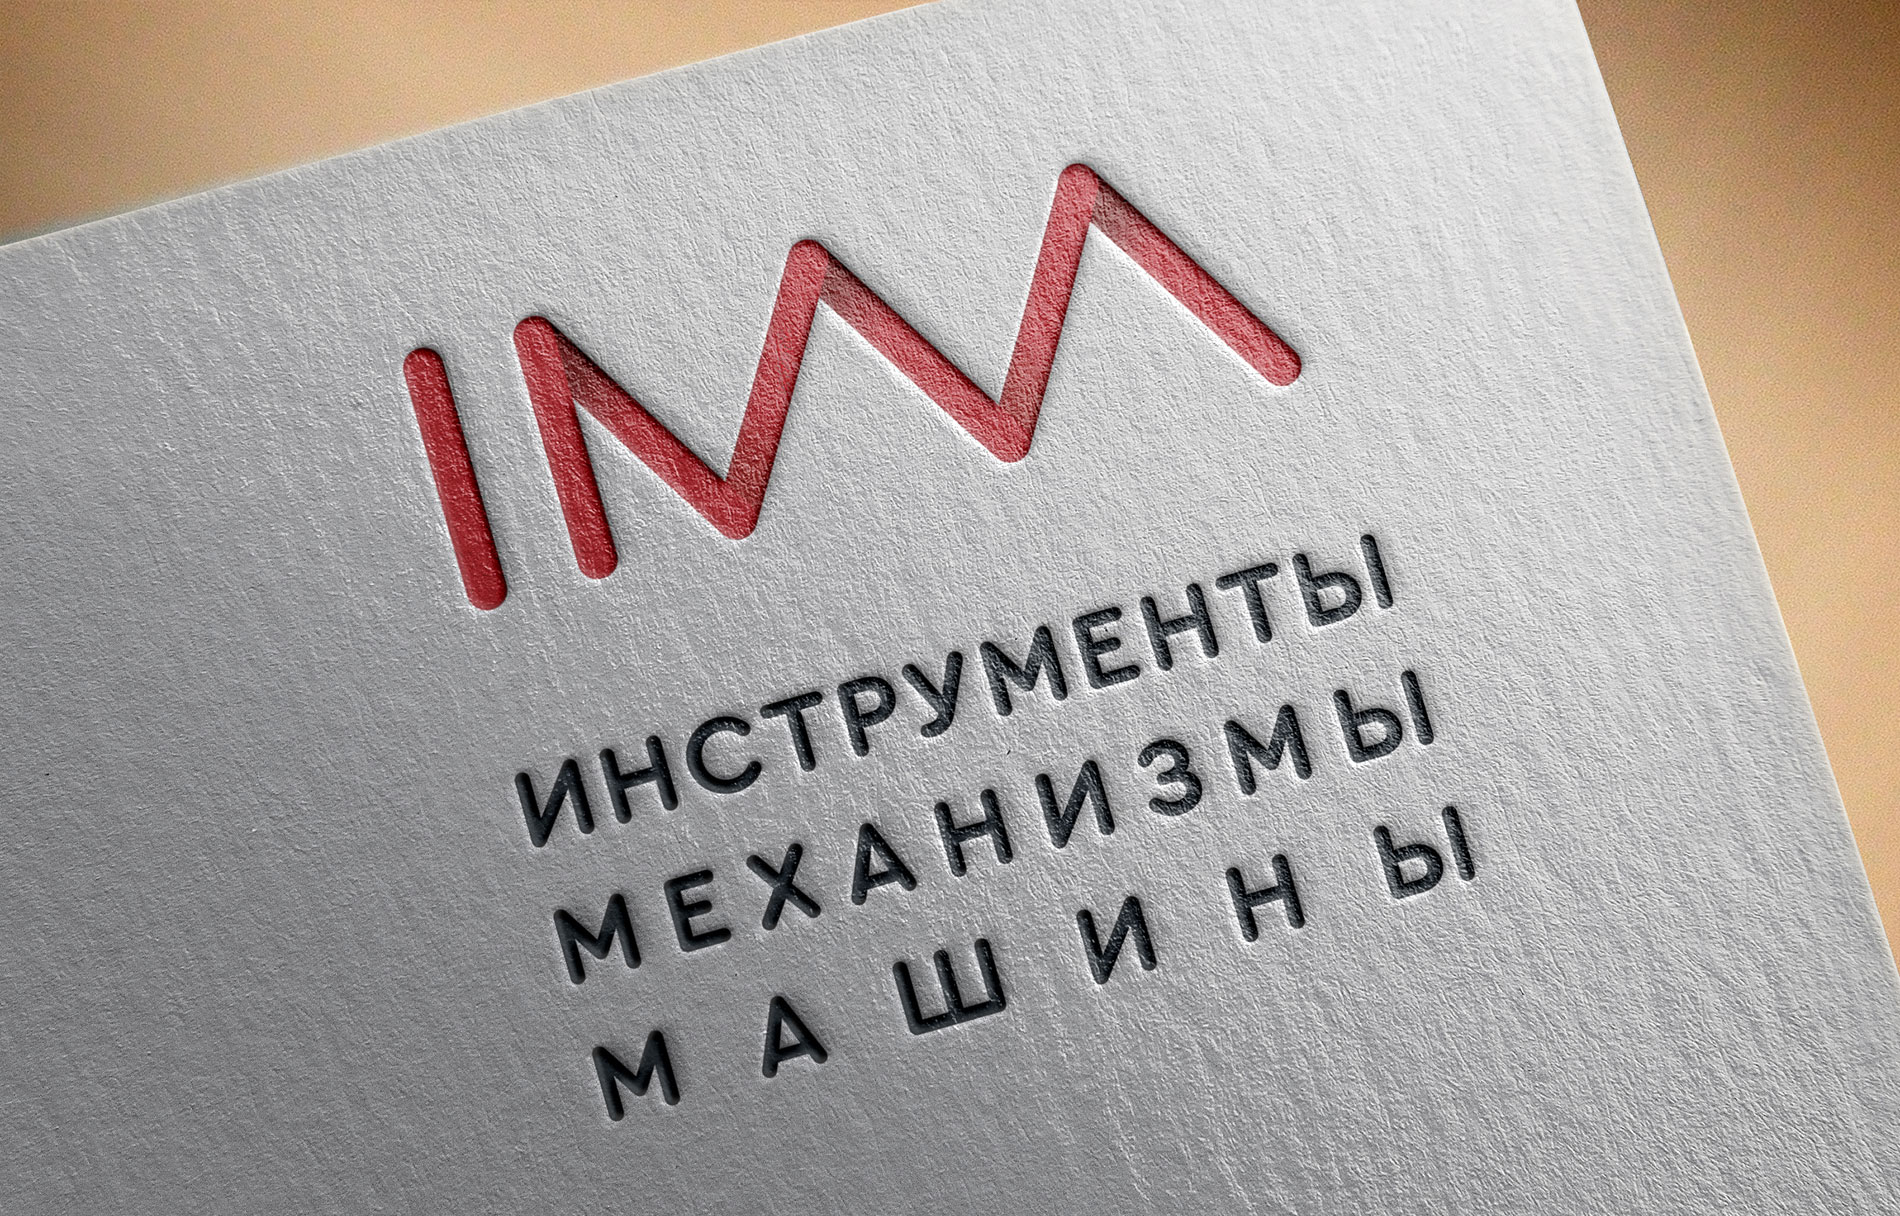 разработка логотипа механизмы